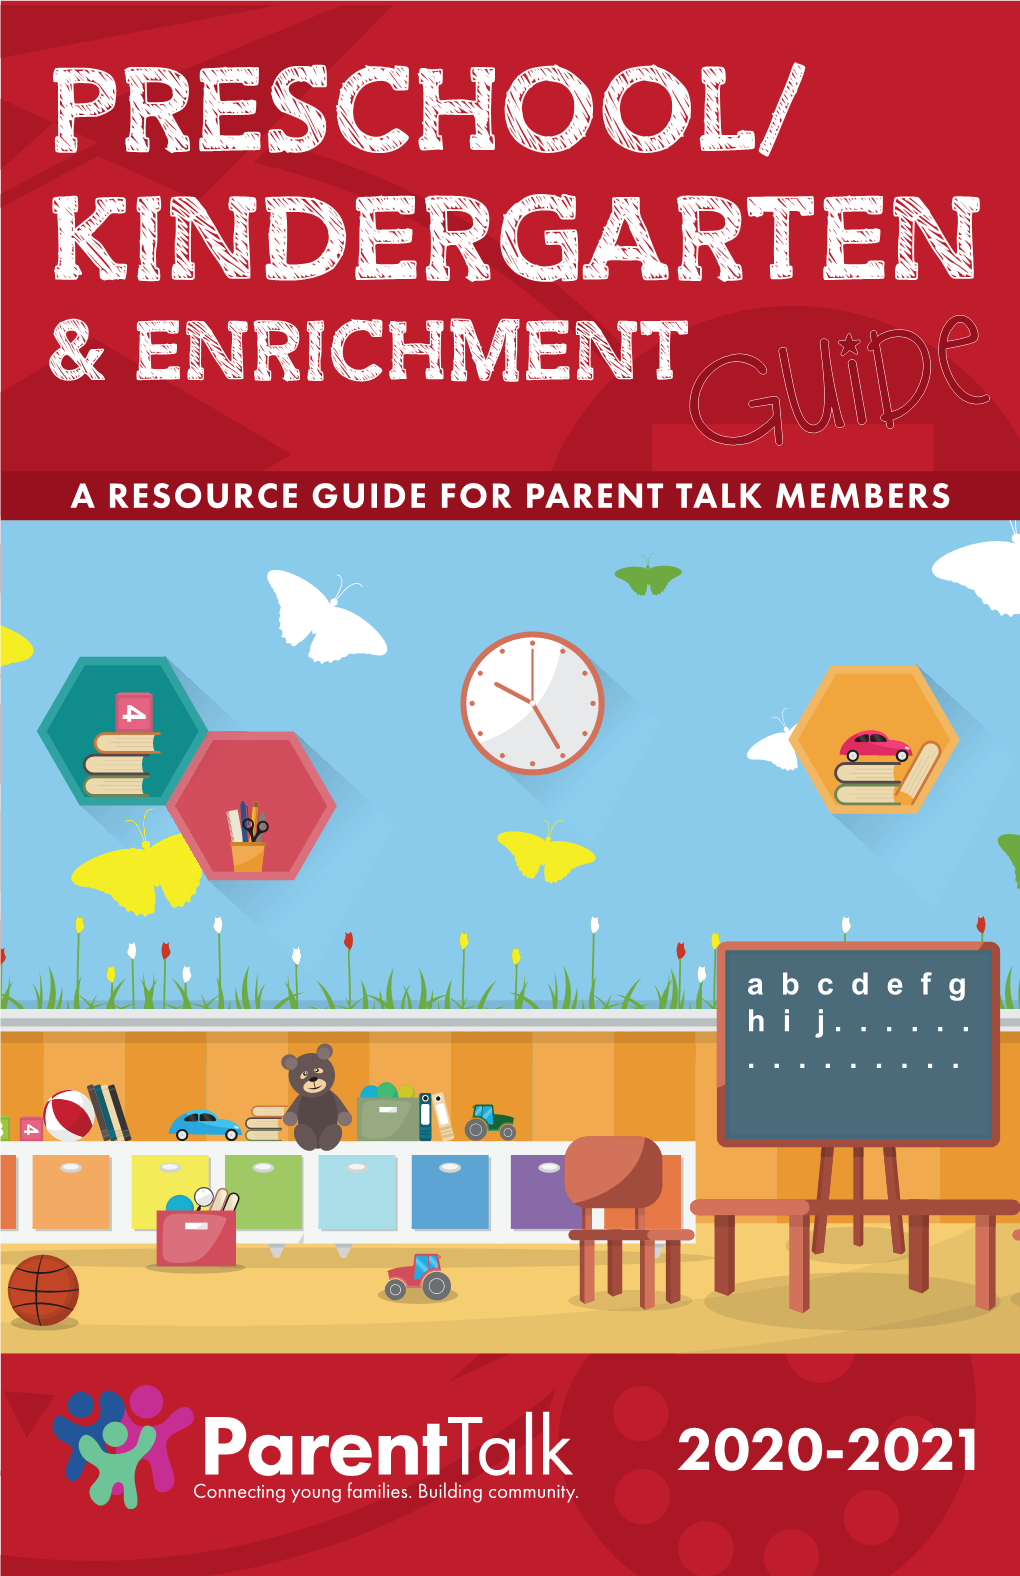 2020-21 Preschool/Kindergarten & Enrichment Guide